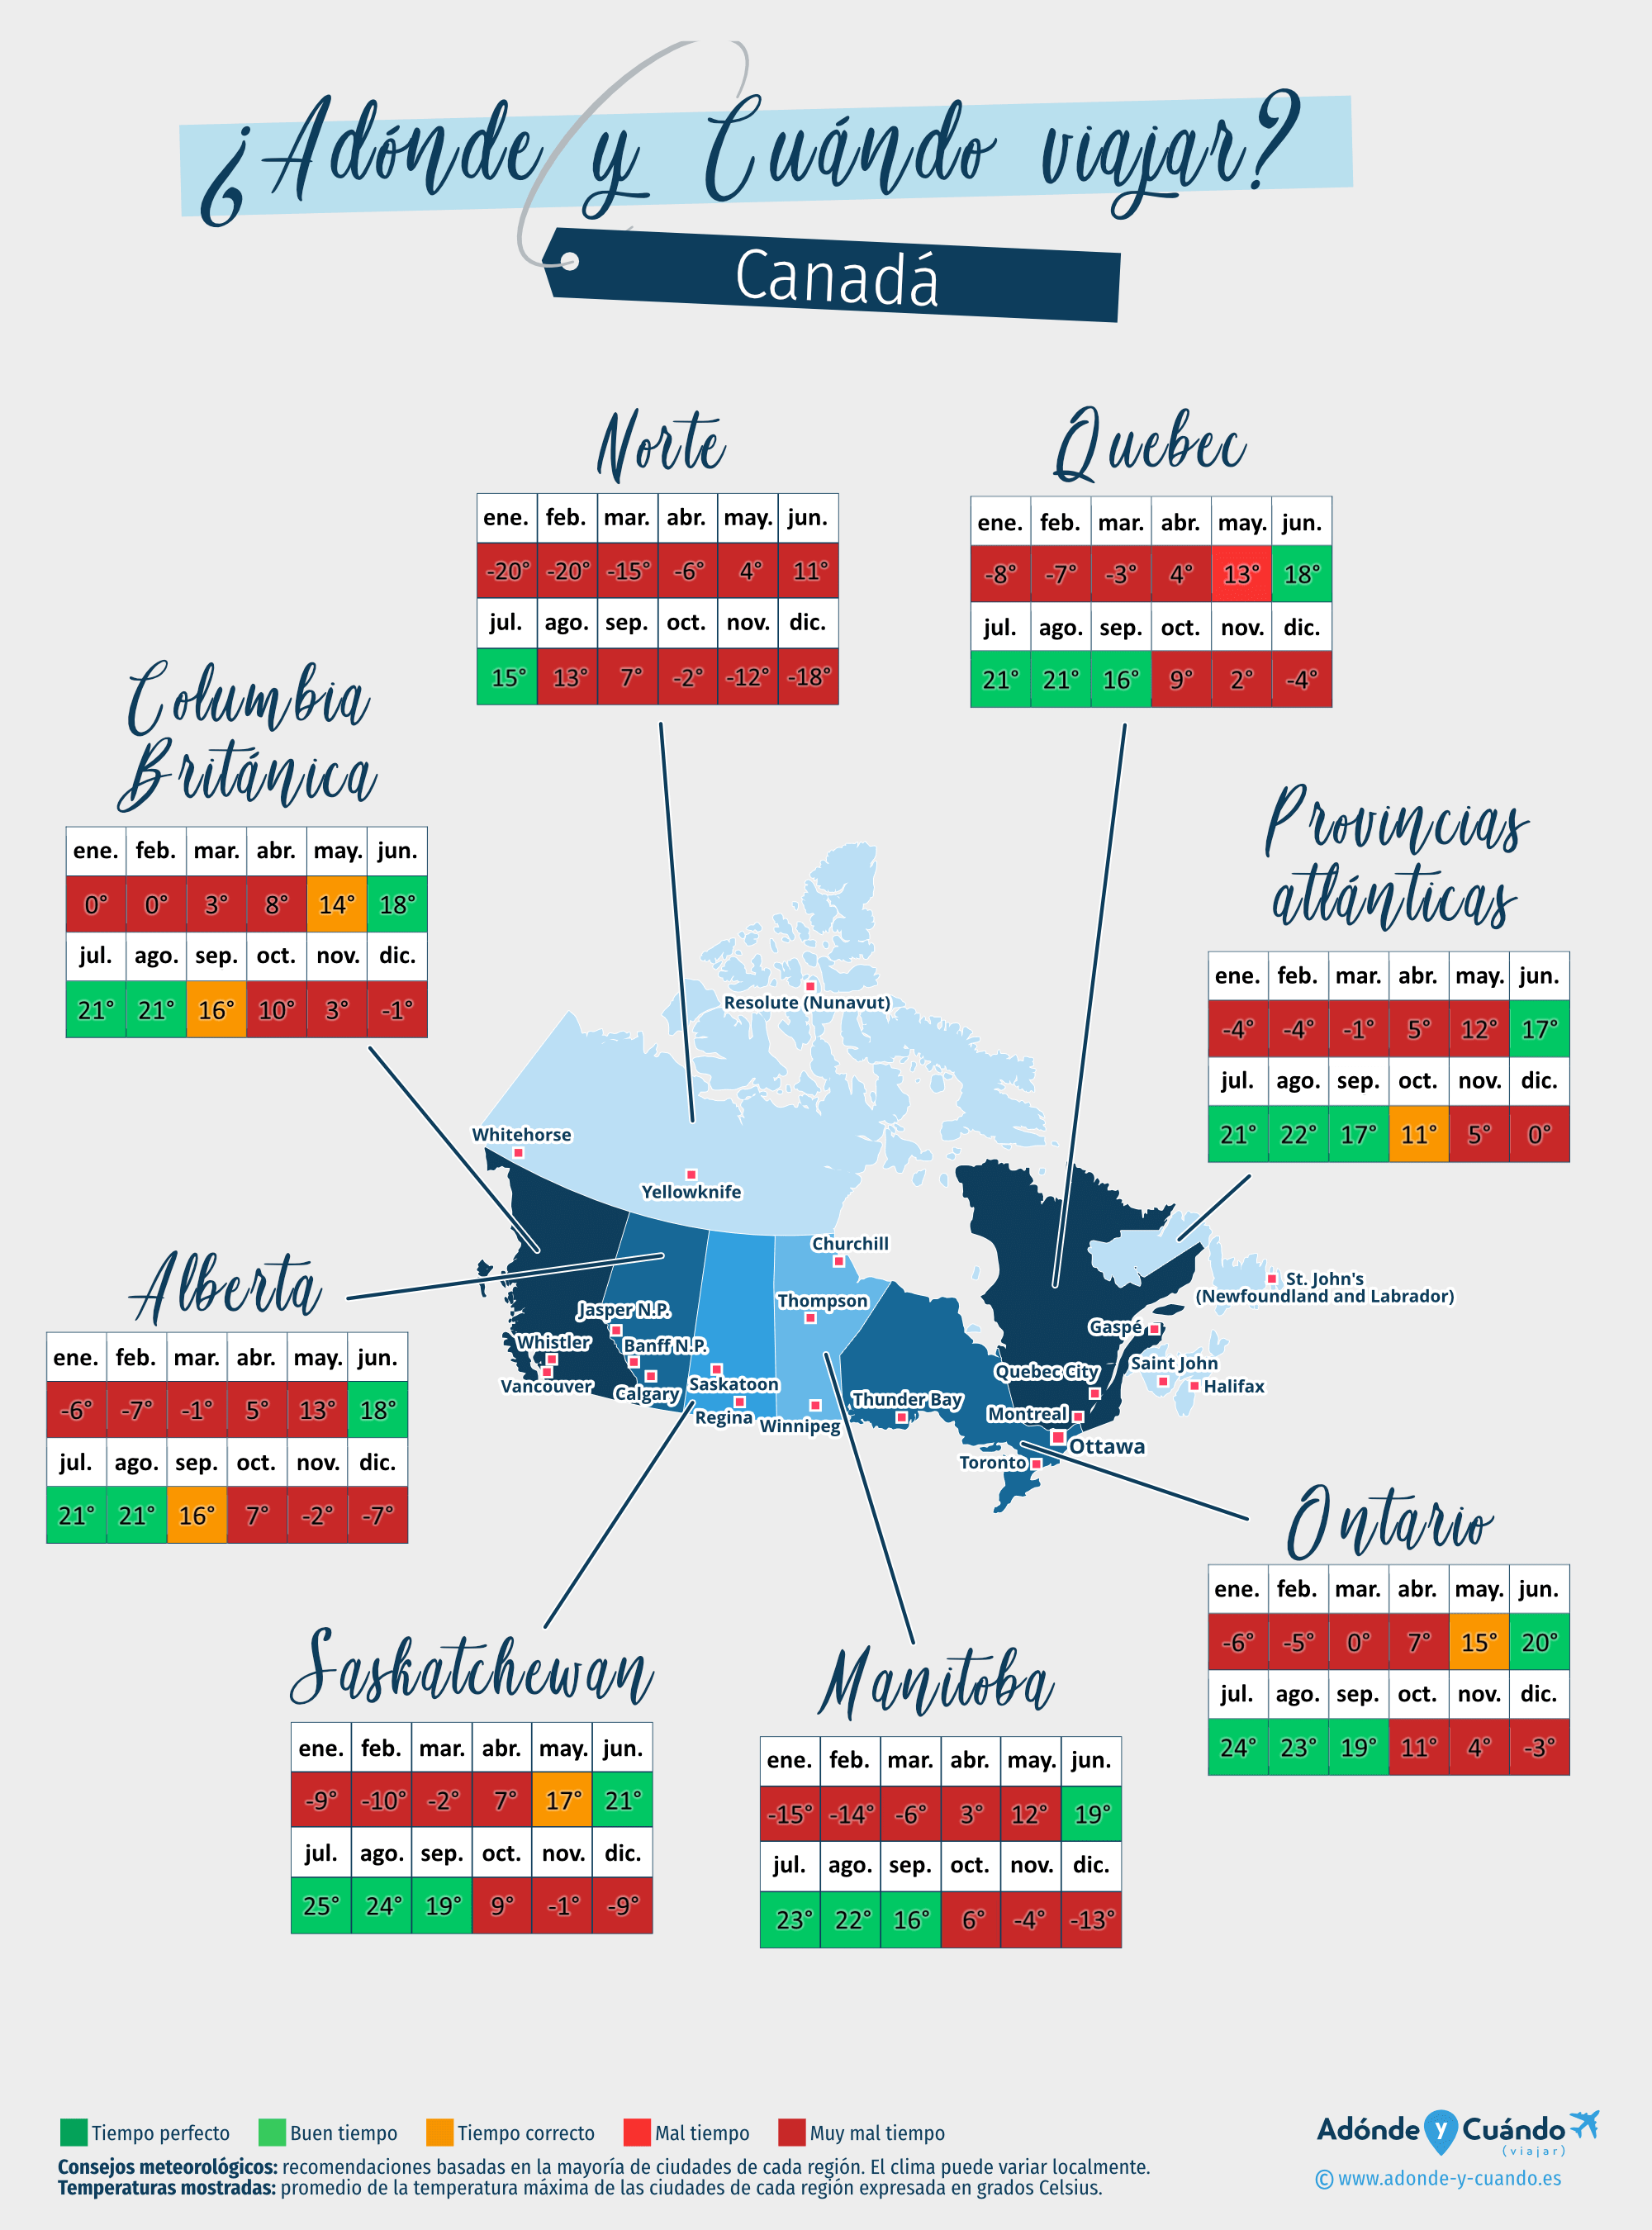 Mapa de las mejores épocas para viajar a Canadá